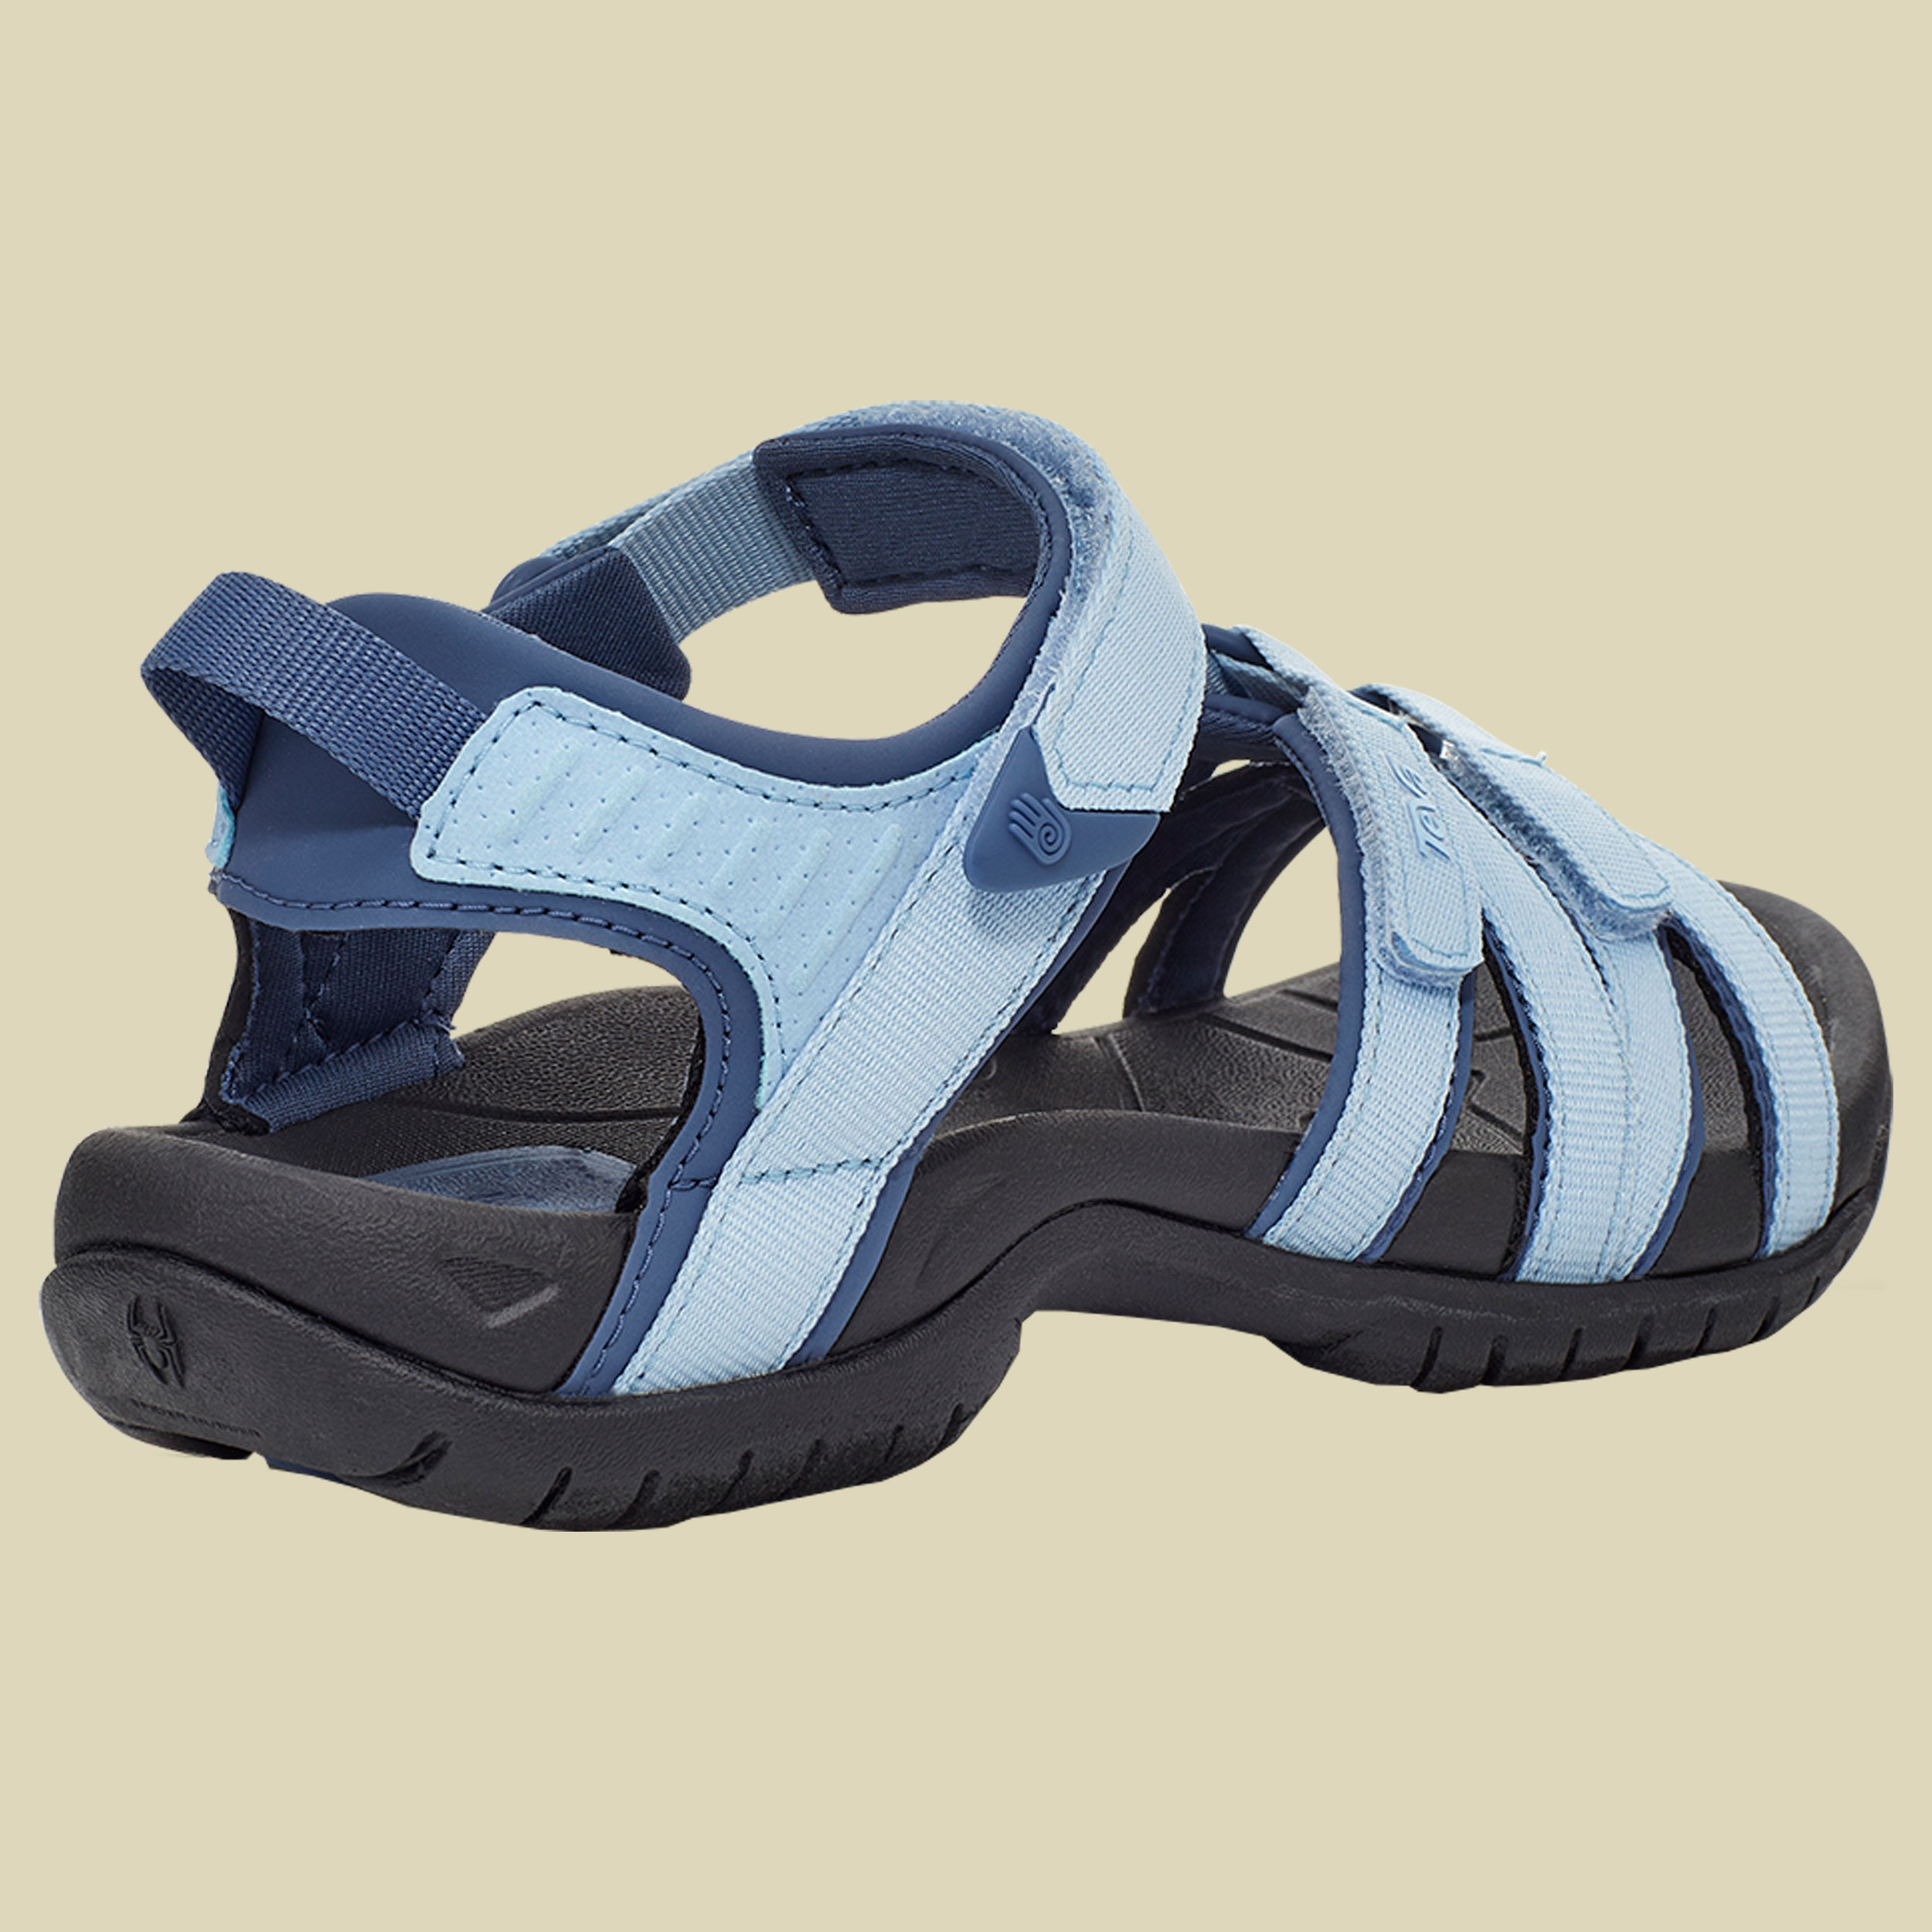 Tirra Sandal Women Größe UK 5 Farbe chambray blue